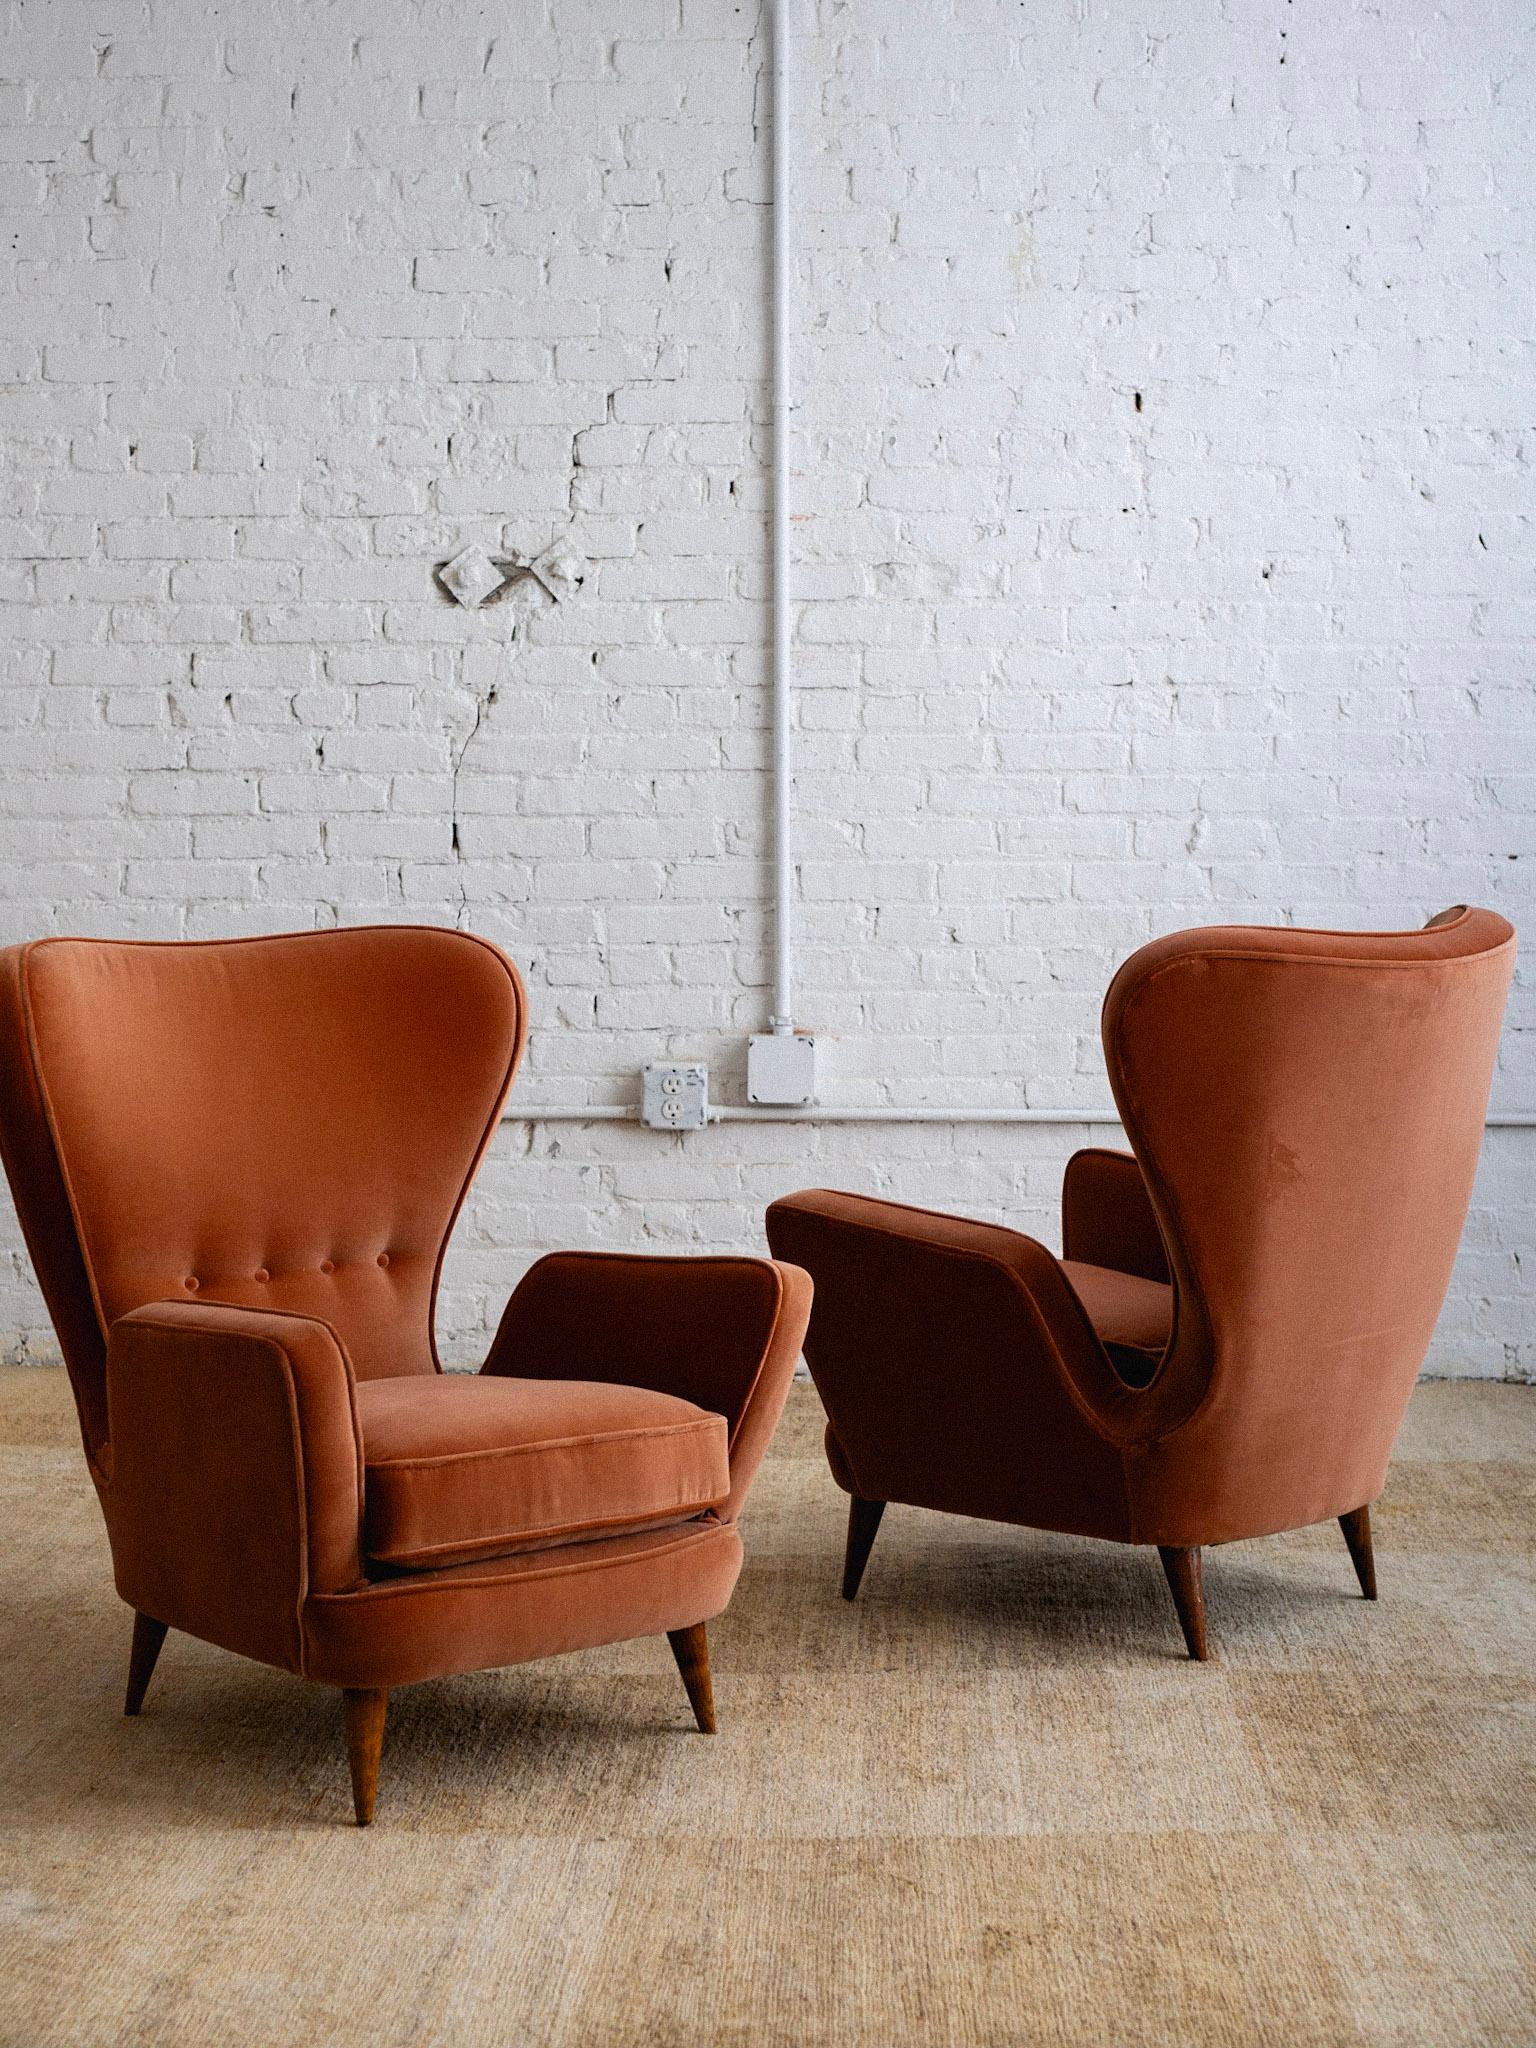 Paire de petits fauteuils conçus par Emilio Sala et Giorgio Madini et fabriqués par Fratelli Galimberti. Silhouette de style Wingback. Nouvellement recouvert d'un velours couleur saumon. Provenant du nord de l'Italie. 